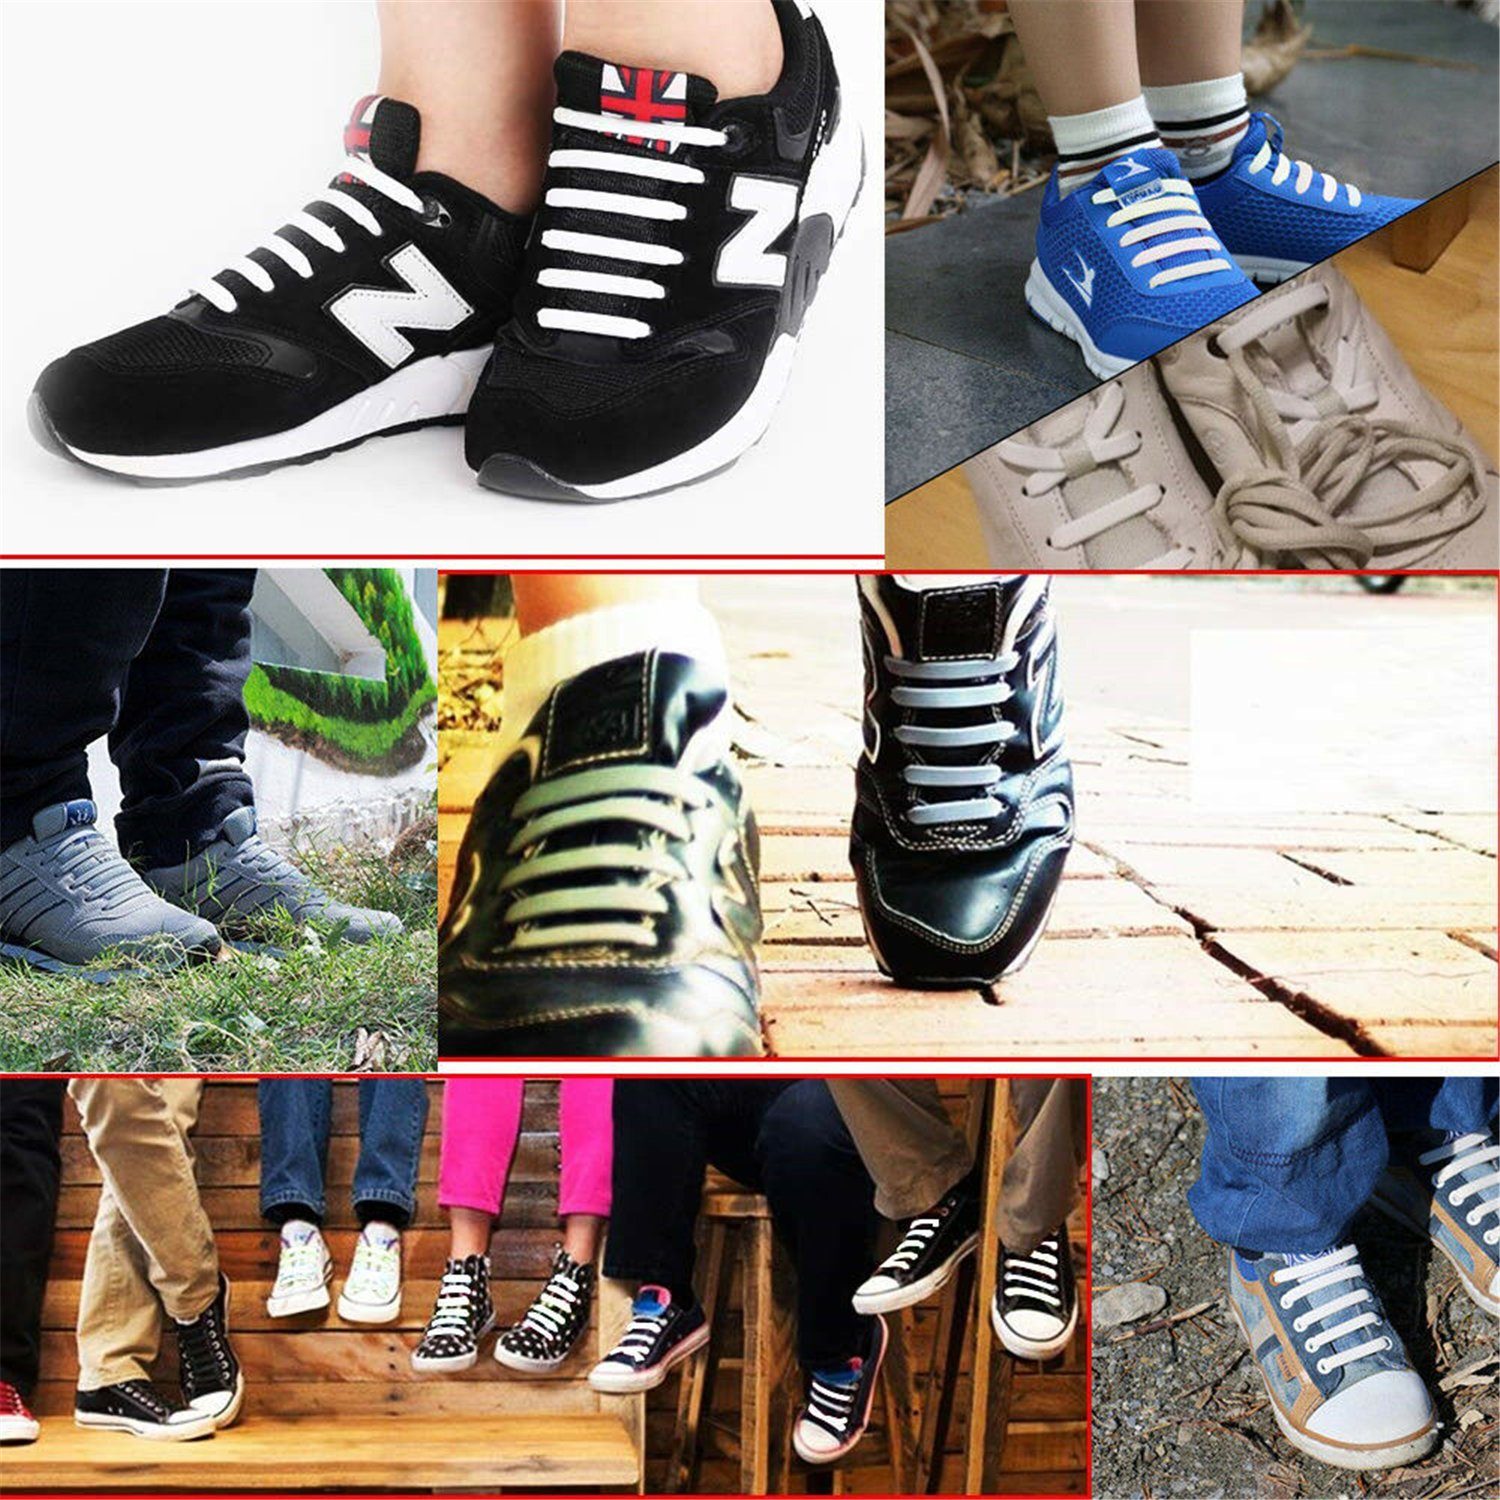 Schnürsenkel Wasserdichte Binden Gummi ohne und Flache Silikon für Schwarz Elastische Erwachsene Kinder Schleifenlose, Schnürsenkel Olotos elastische Schuhbänder